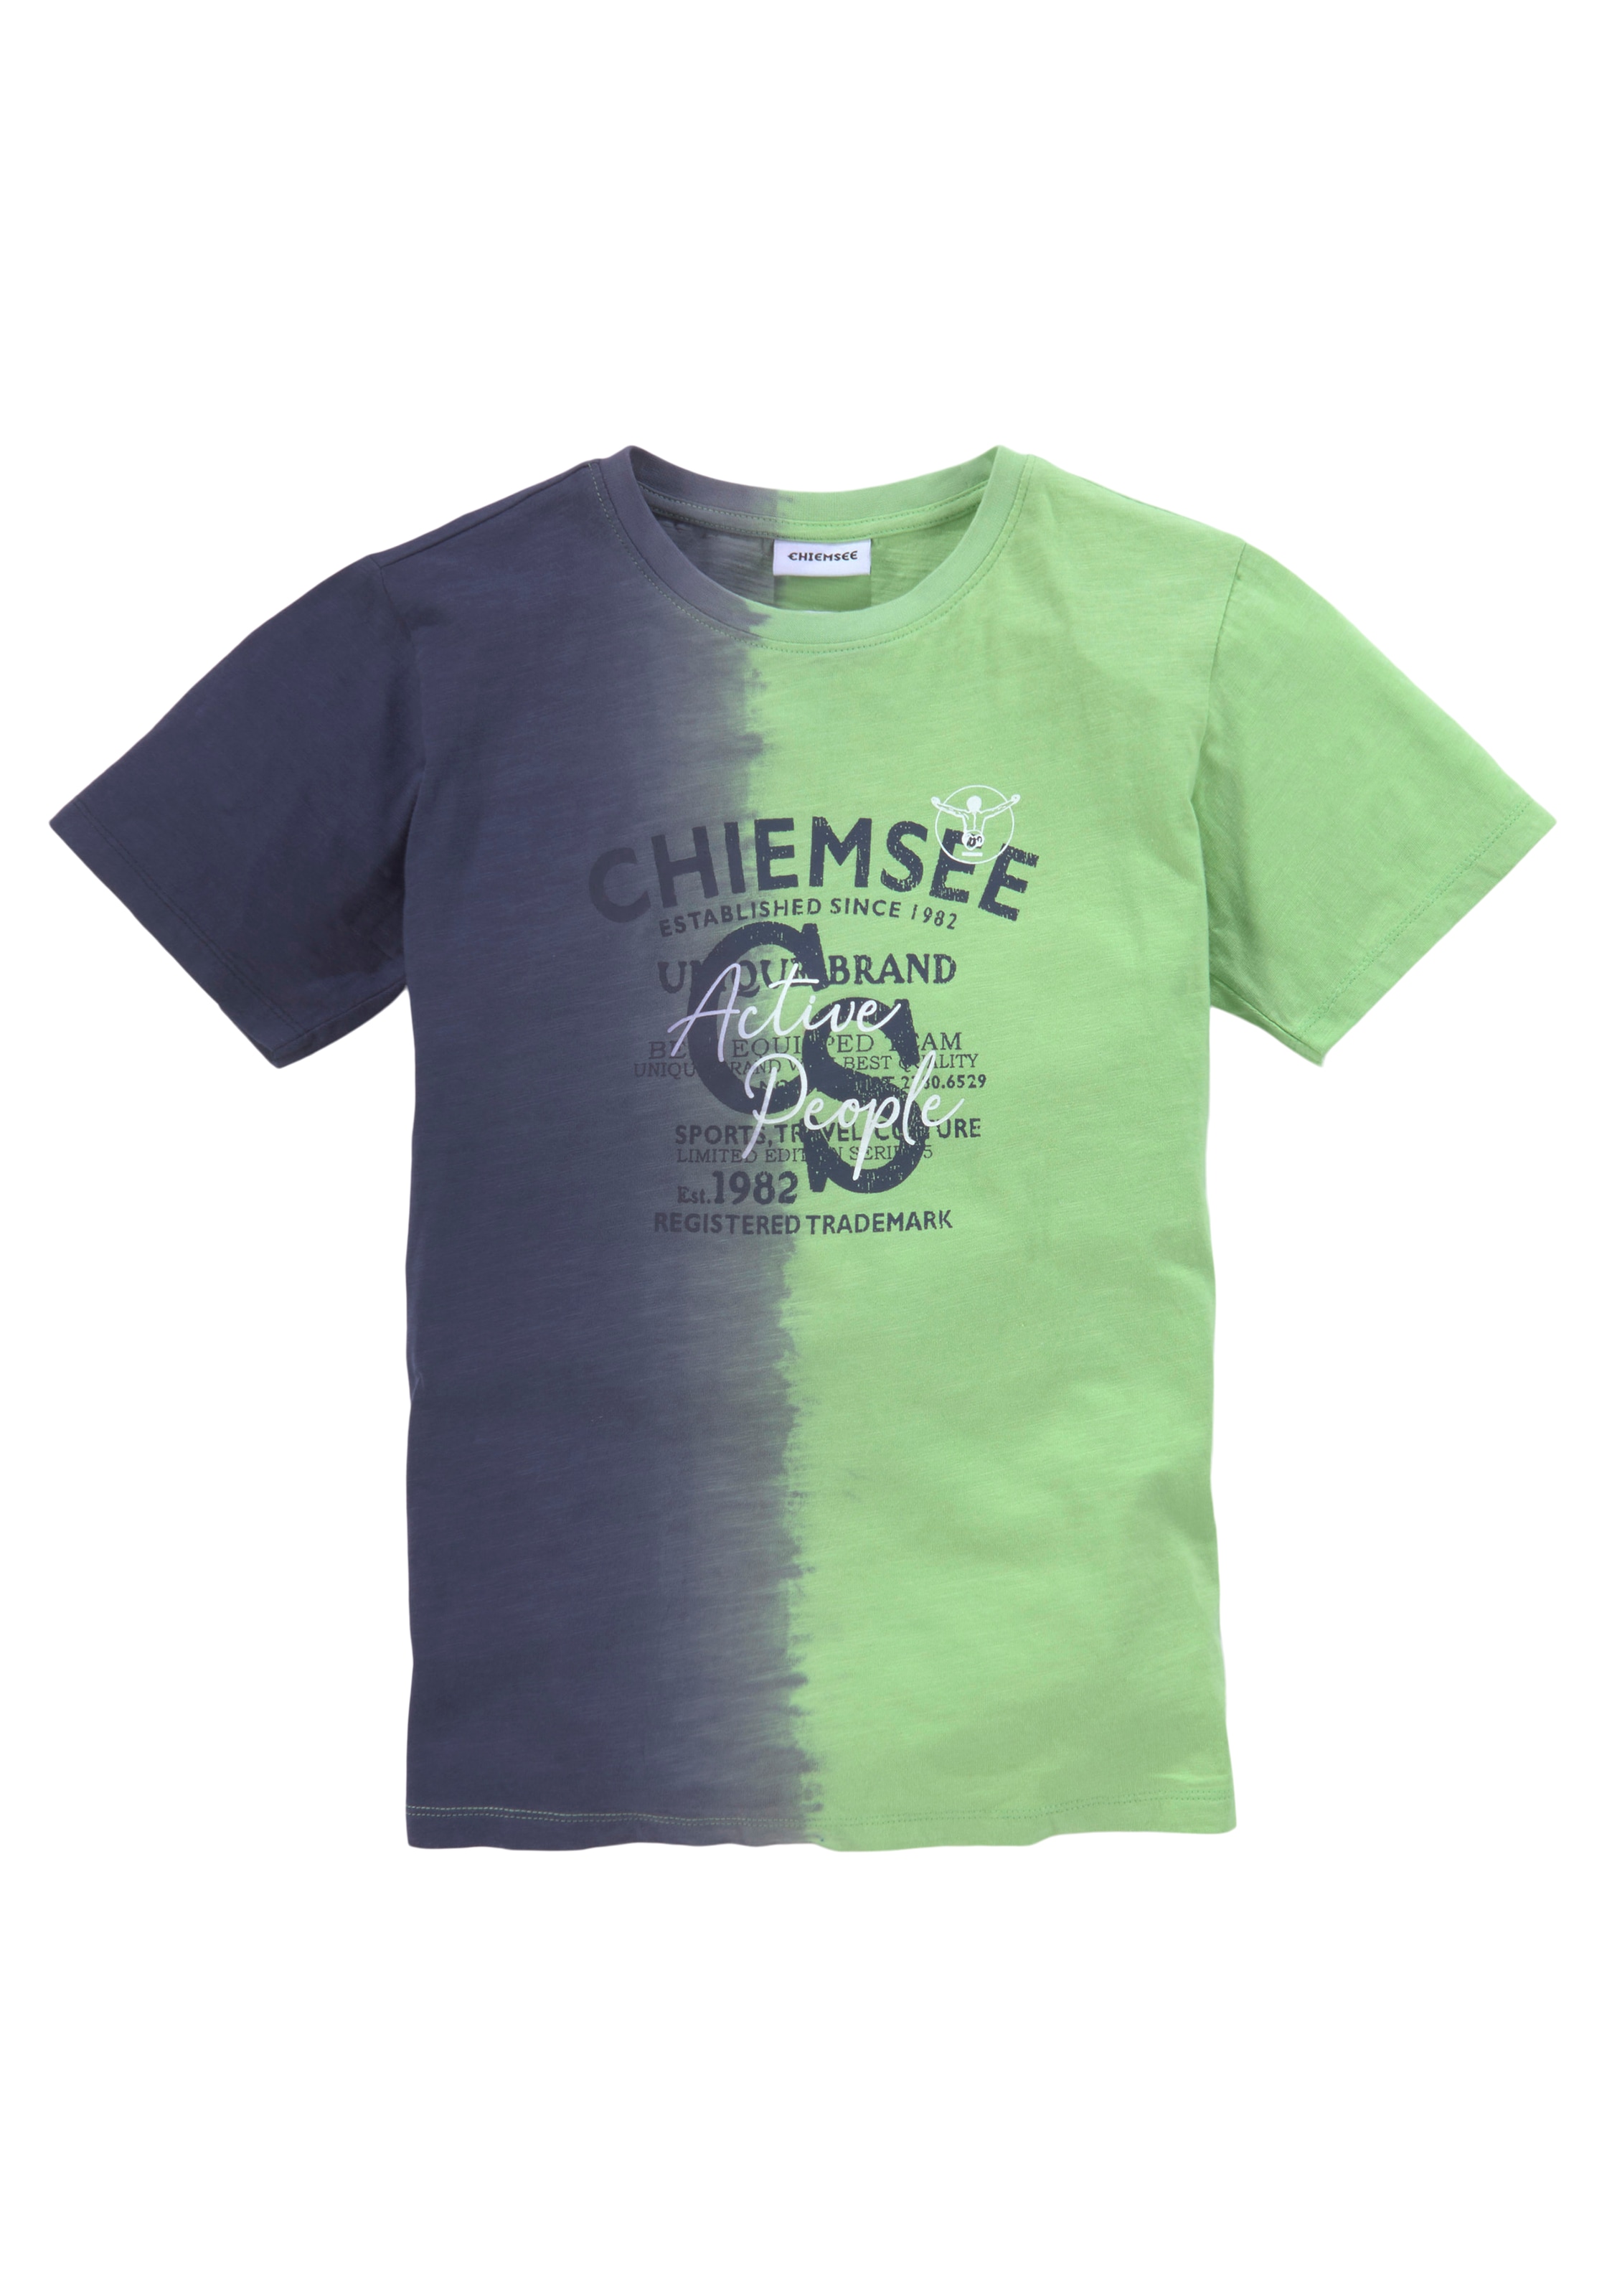 »Farbverlauf«, T-Shirt auf Chiemsee versandkostenfrei vertikalem Farbverlauf mit